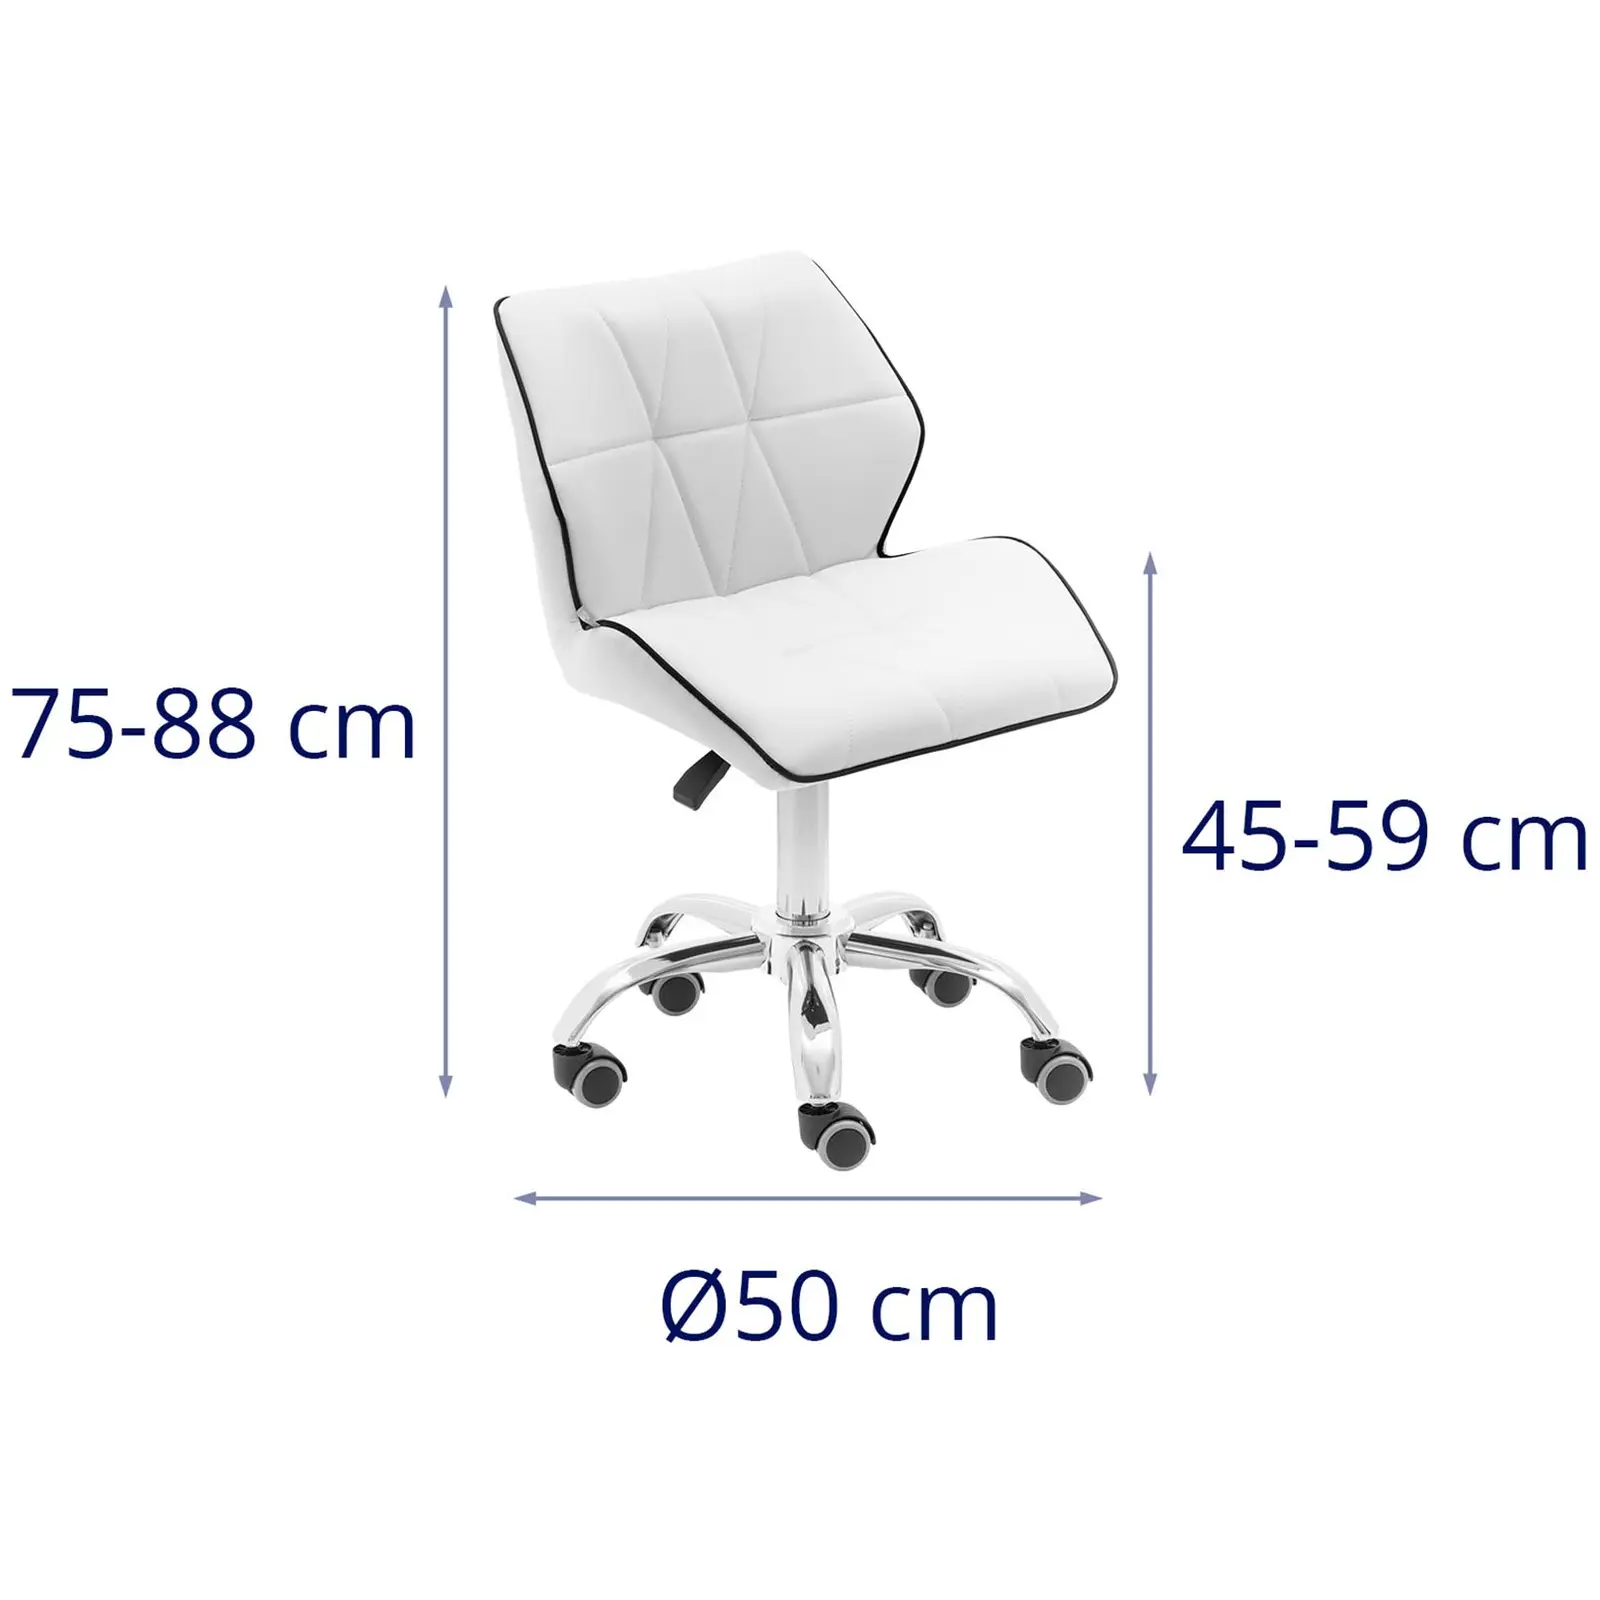 Arbejdsstol med hjul - 45 - 59 cm - 150 kg - hvid